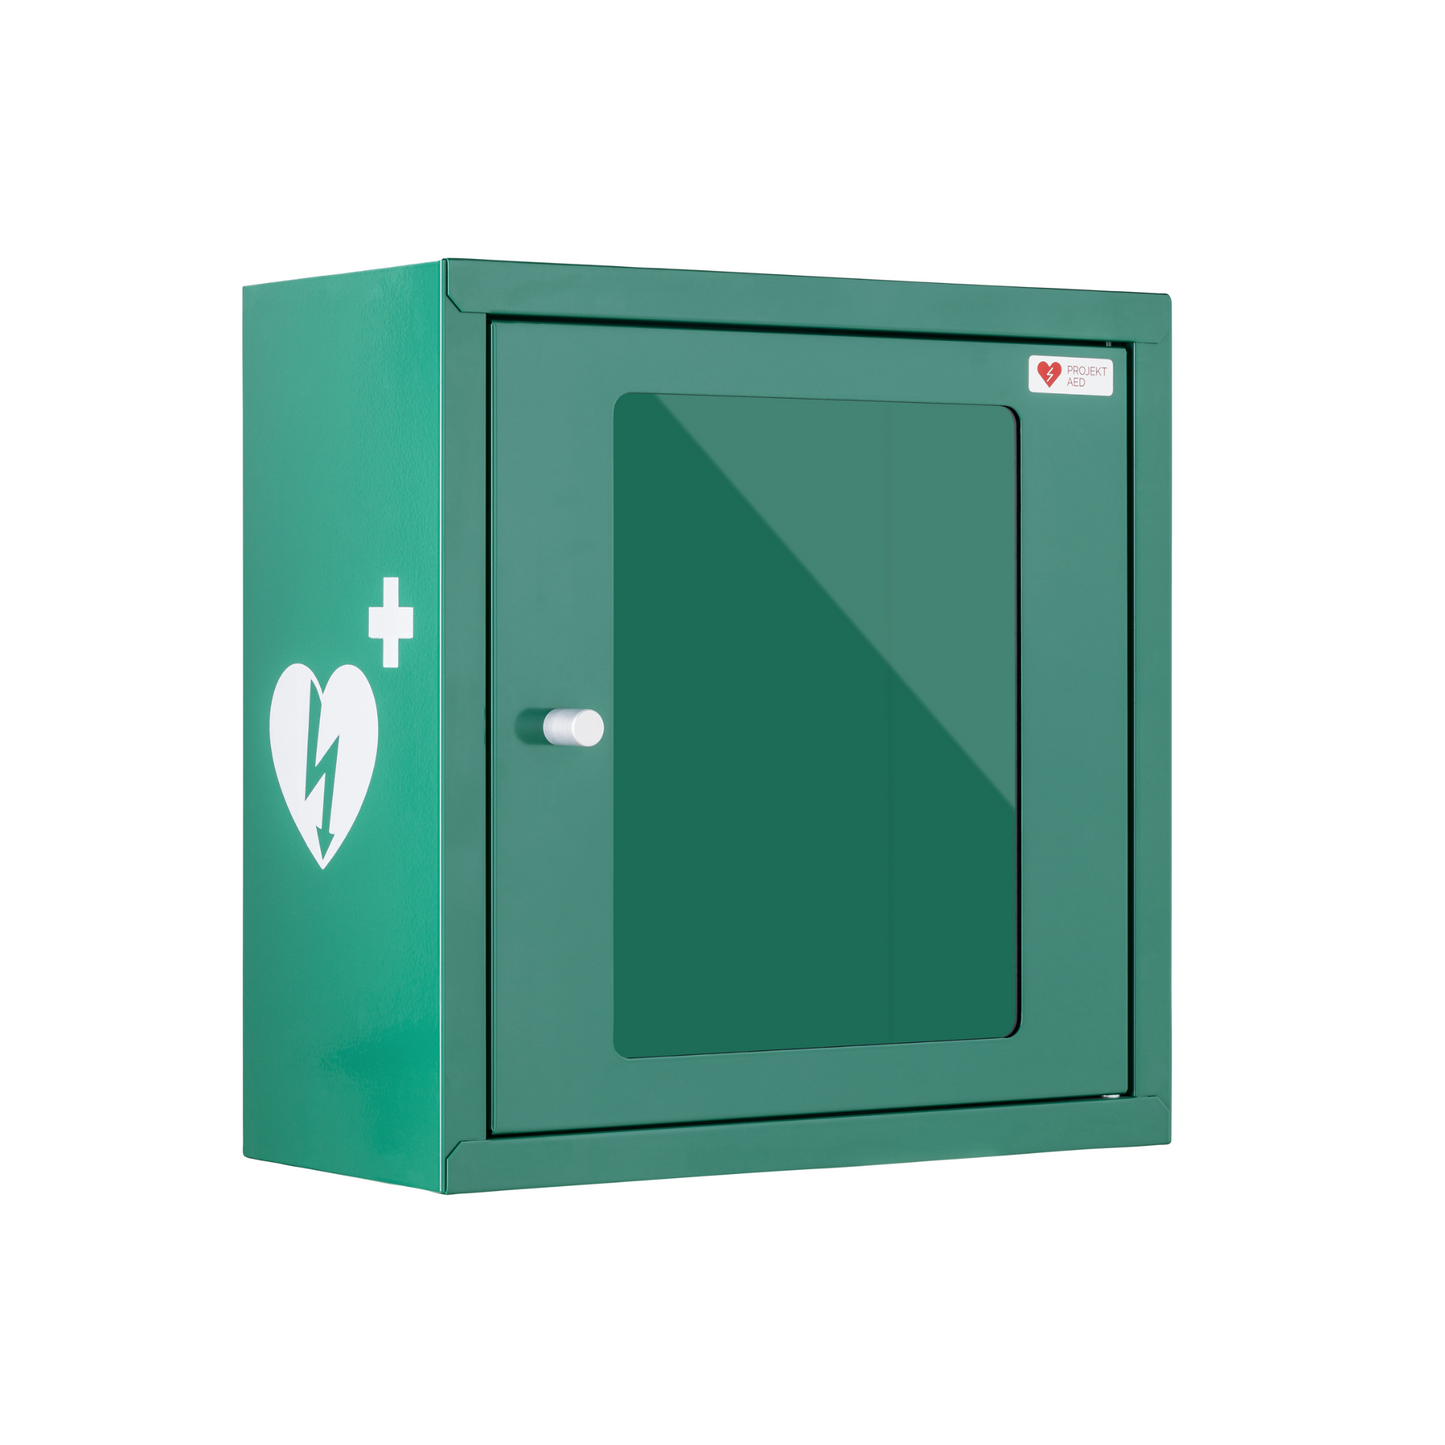 Komplettpaket Philips Heartstart- HS1 AED mit Innenbox (grün)